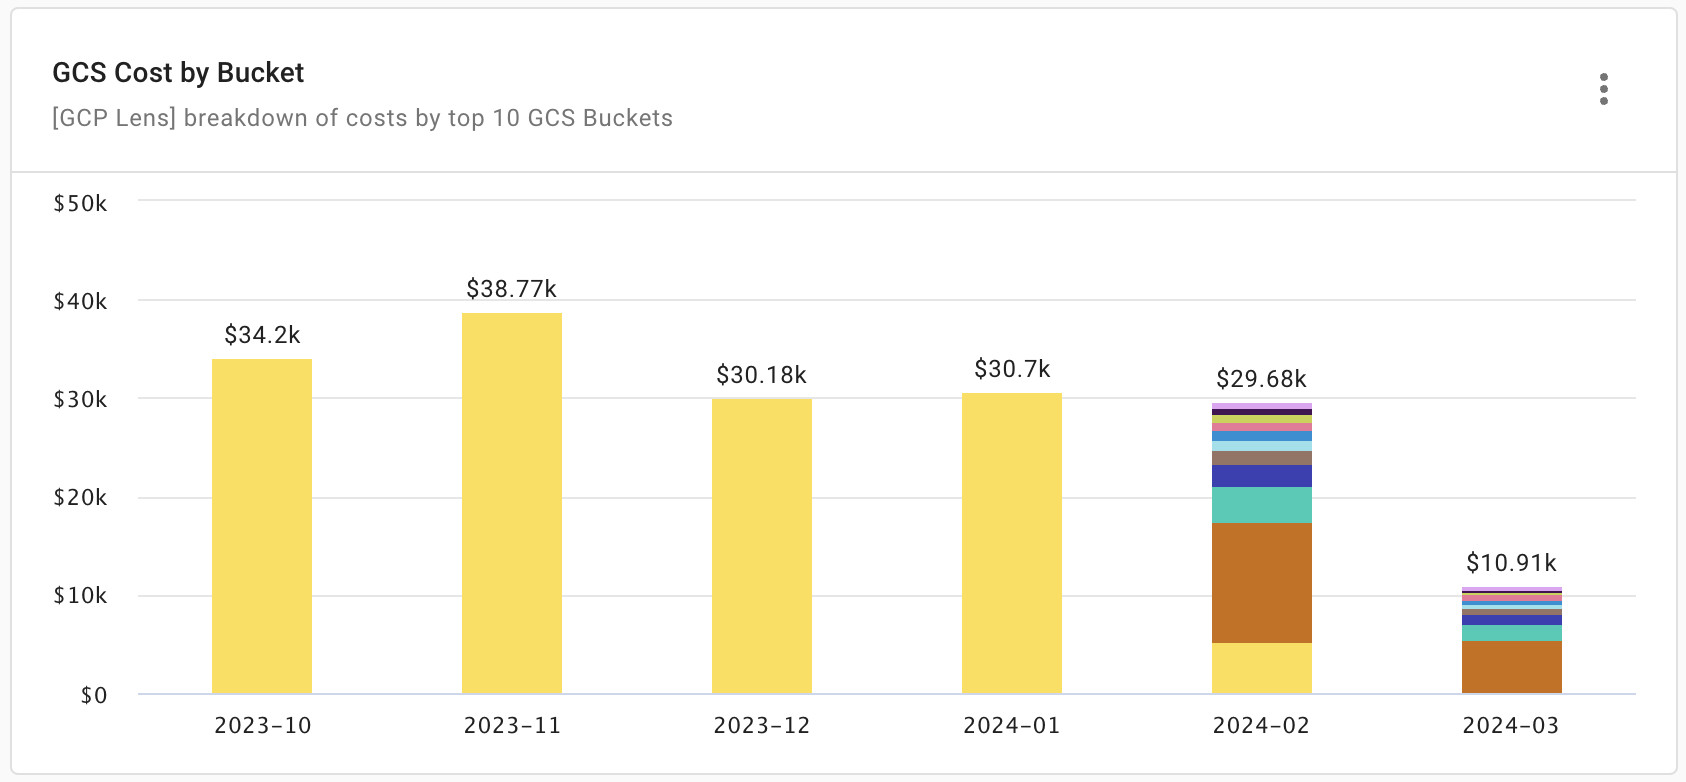 GCS cost breakdown by bucket